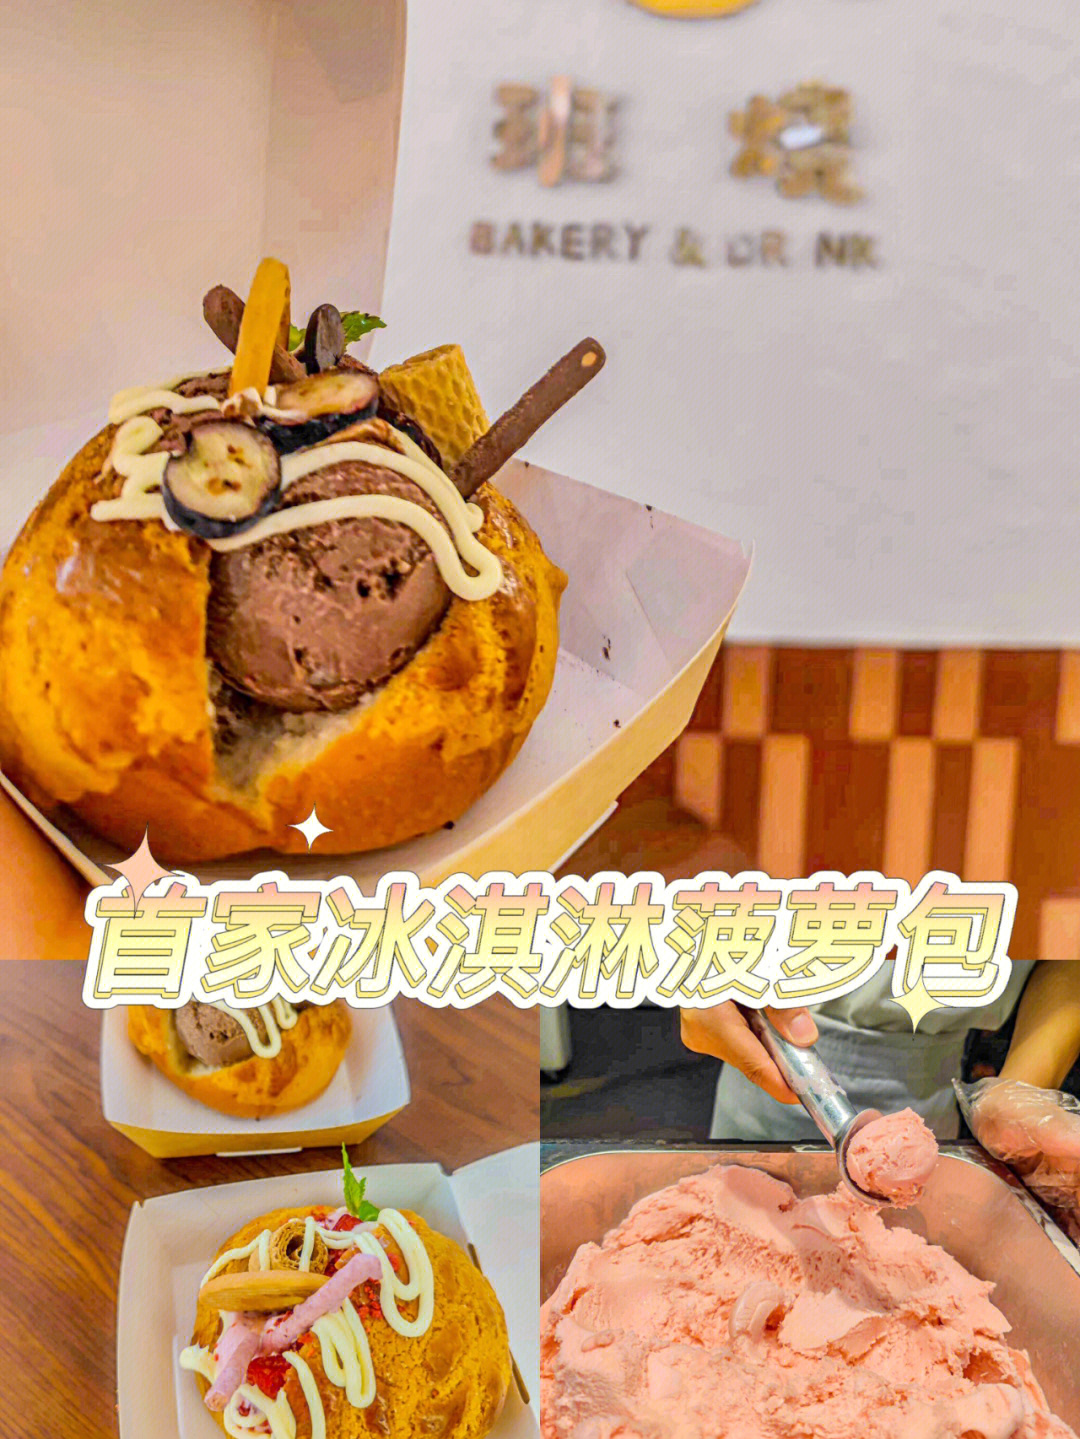 菠萝包冰淇淋加盟图片